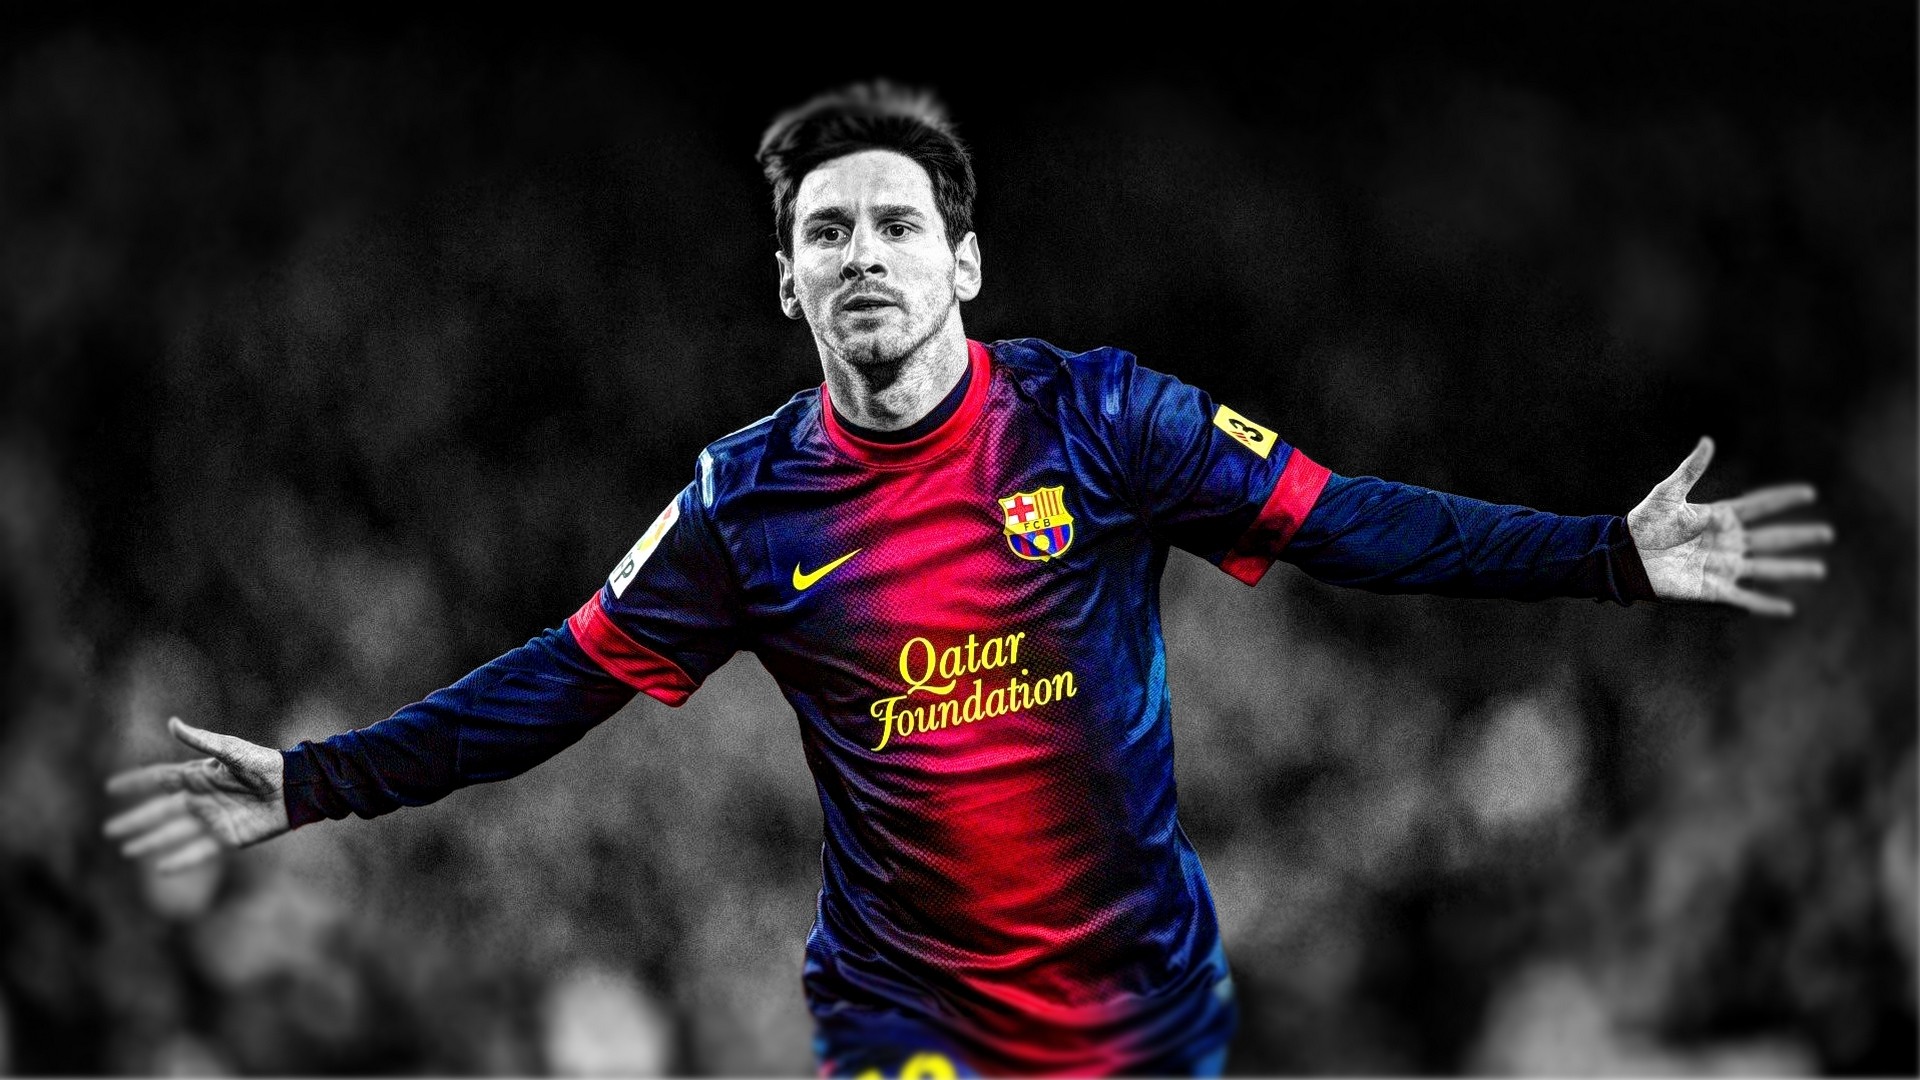 Chào mừng bạn đến với hình ảnh ăn mừng của Messi. Hãy cảm nhận sự phấn khích của anh ấy và động lực để hoàn thành những mục tiêu. Với những bức ảnh này, bạn sẽ luôn được truyền cảm hứng để tiếp tục đi đến thành công của riêng mình, như Messi đã làm!